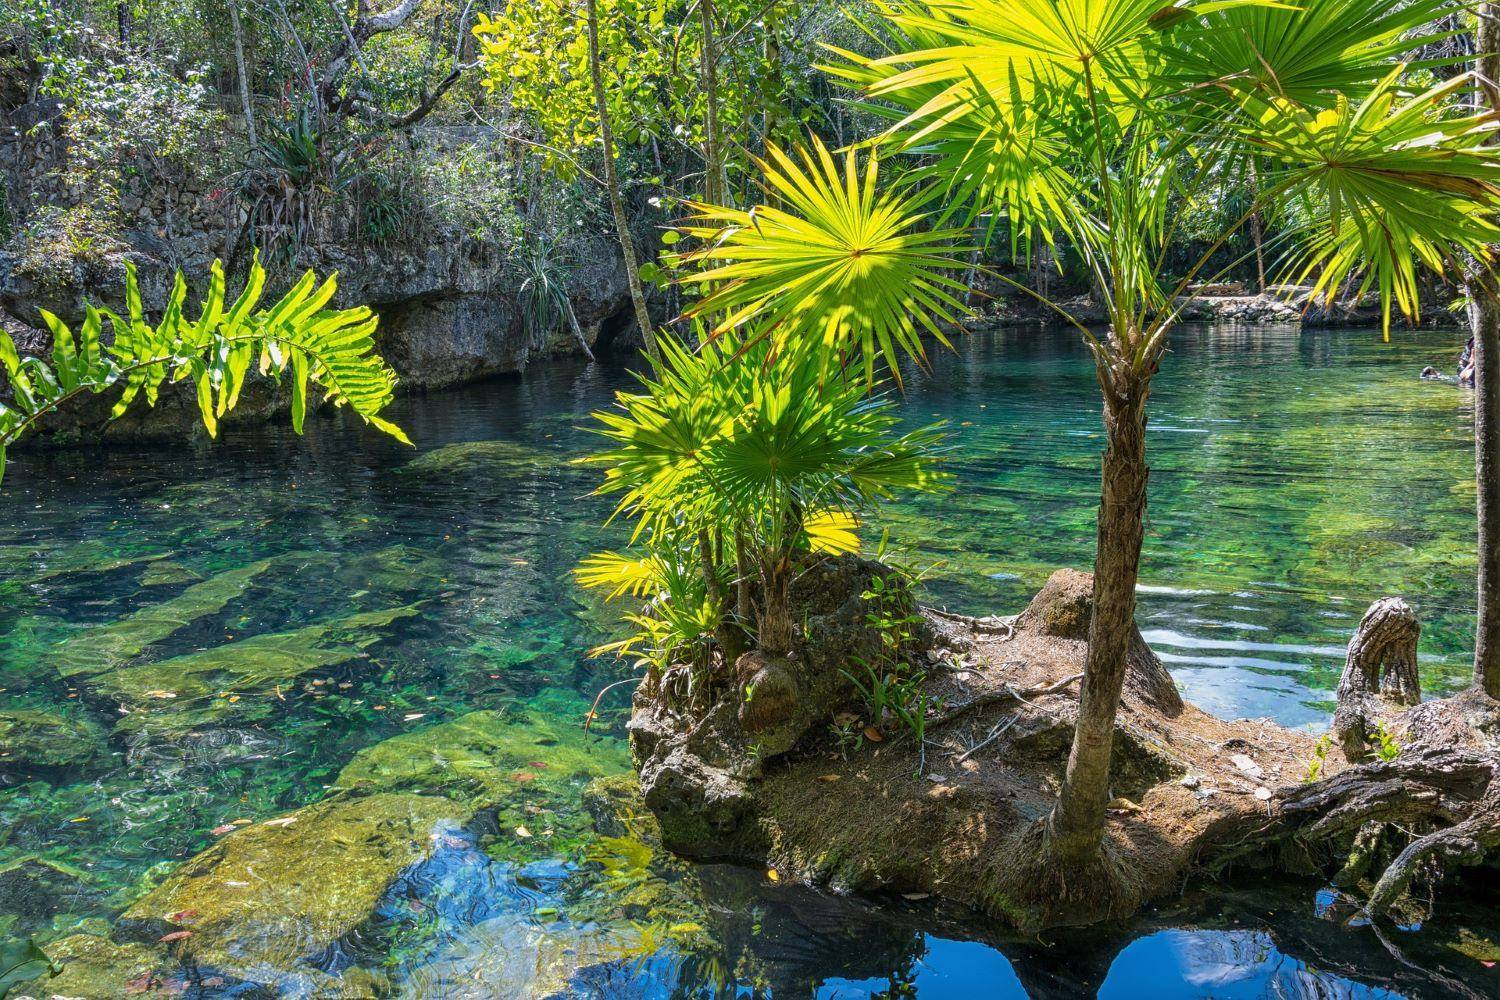 Da Campeche a Merida tra cappelli Panama e un cenote nascostoSELVA